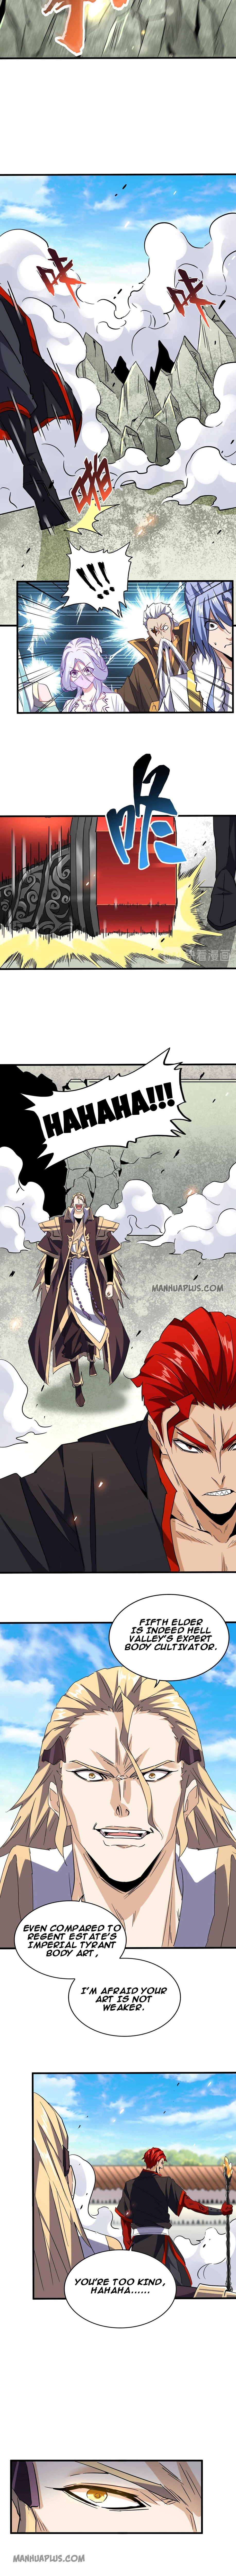 Magic Emperor Chapter 187 page 4 - Mangakakalot